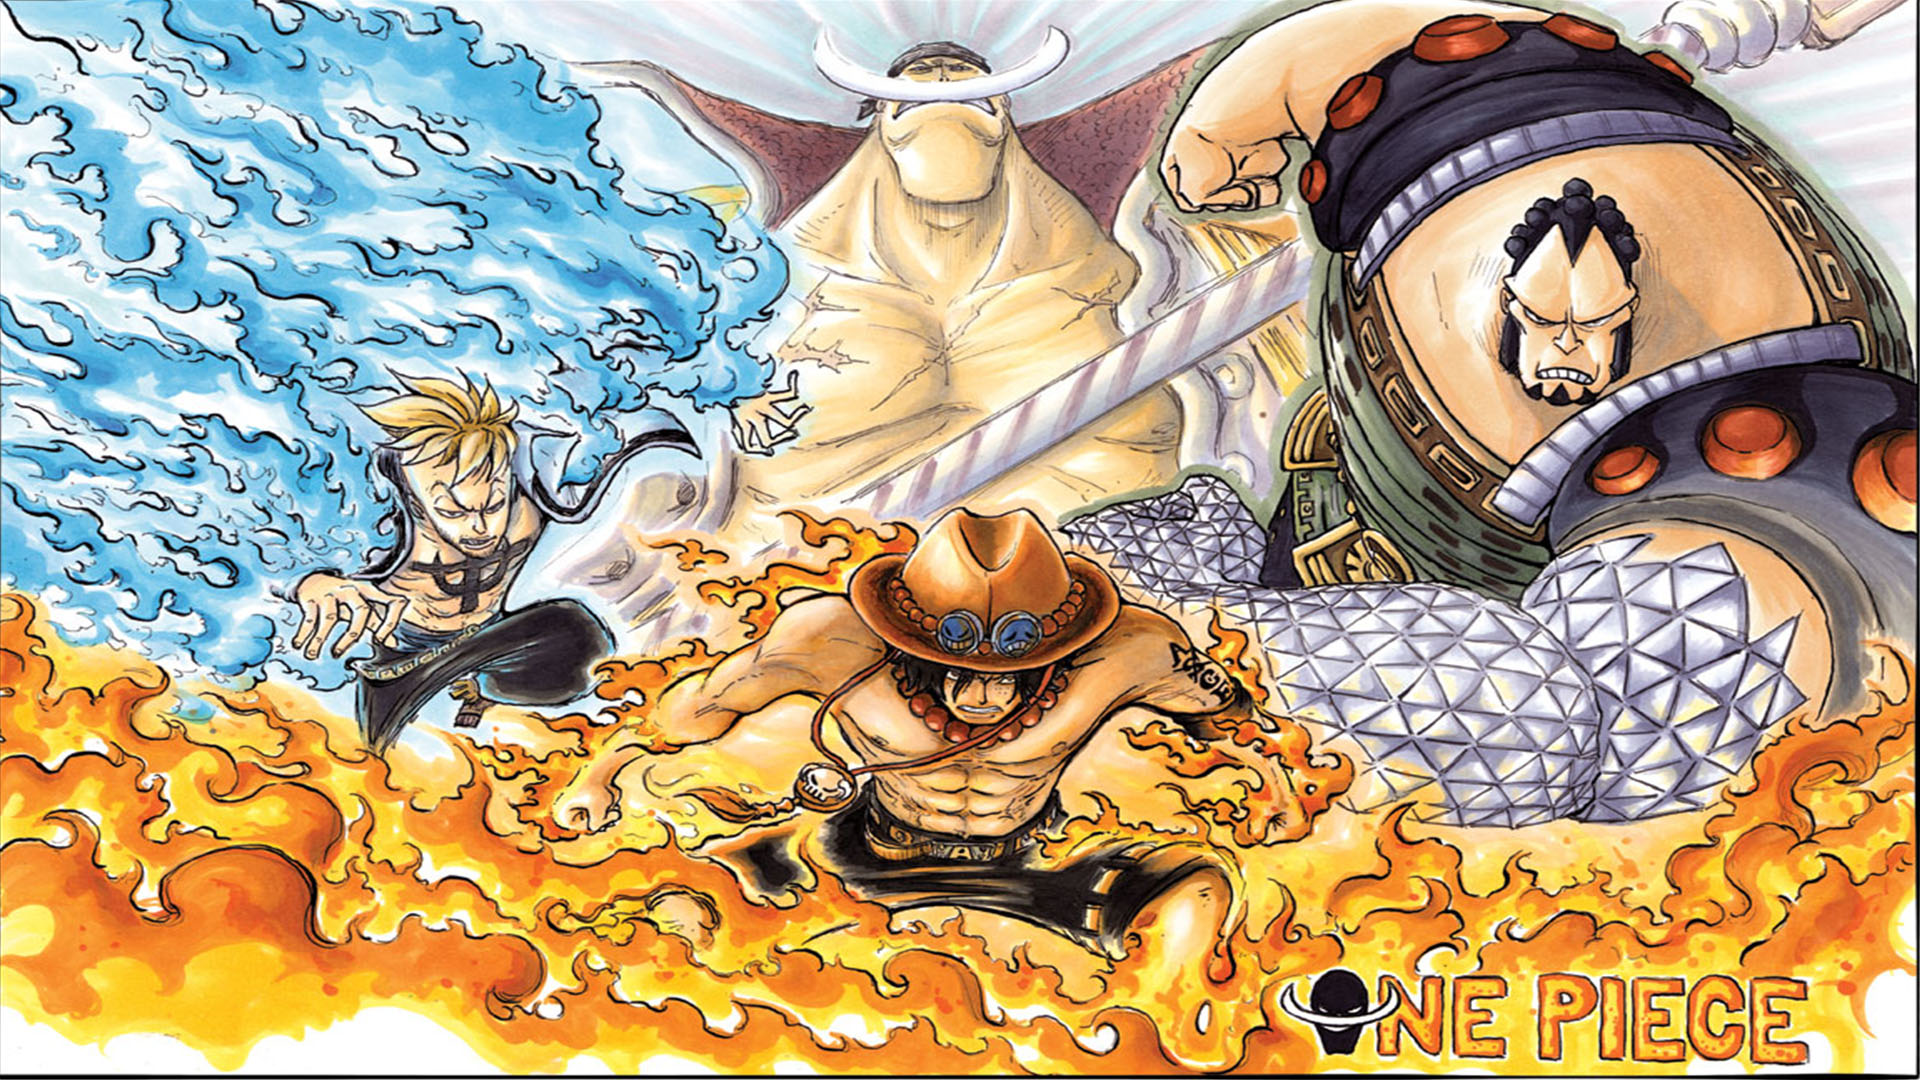 Hình nền râu trắng One Piece là điều không thể bỏ qua đối với những tín đồ yêu thích bộ truyện tranh đình đám này. Với những hình ảnh đầy màu sắc và hoành tráng, bạn sẽ được truyền cảm hứng và năng lượng để chinh phục mọi thử thách trong cuộc sống.